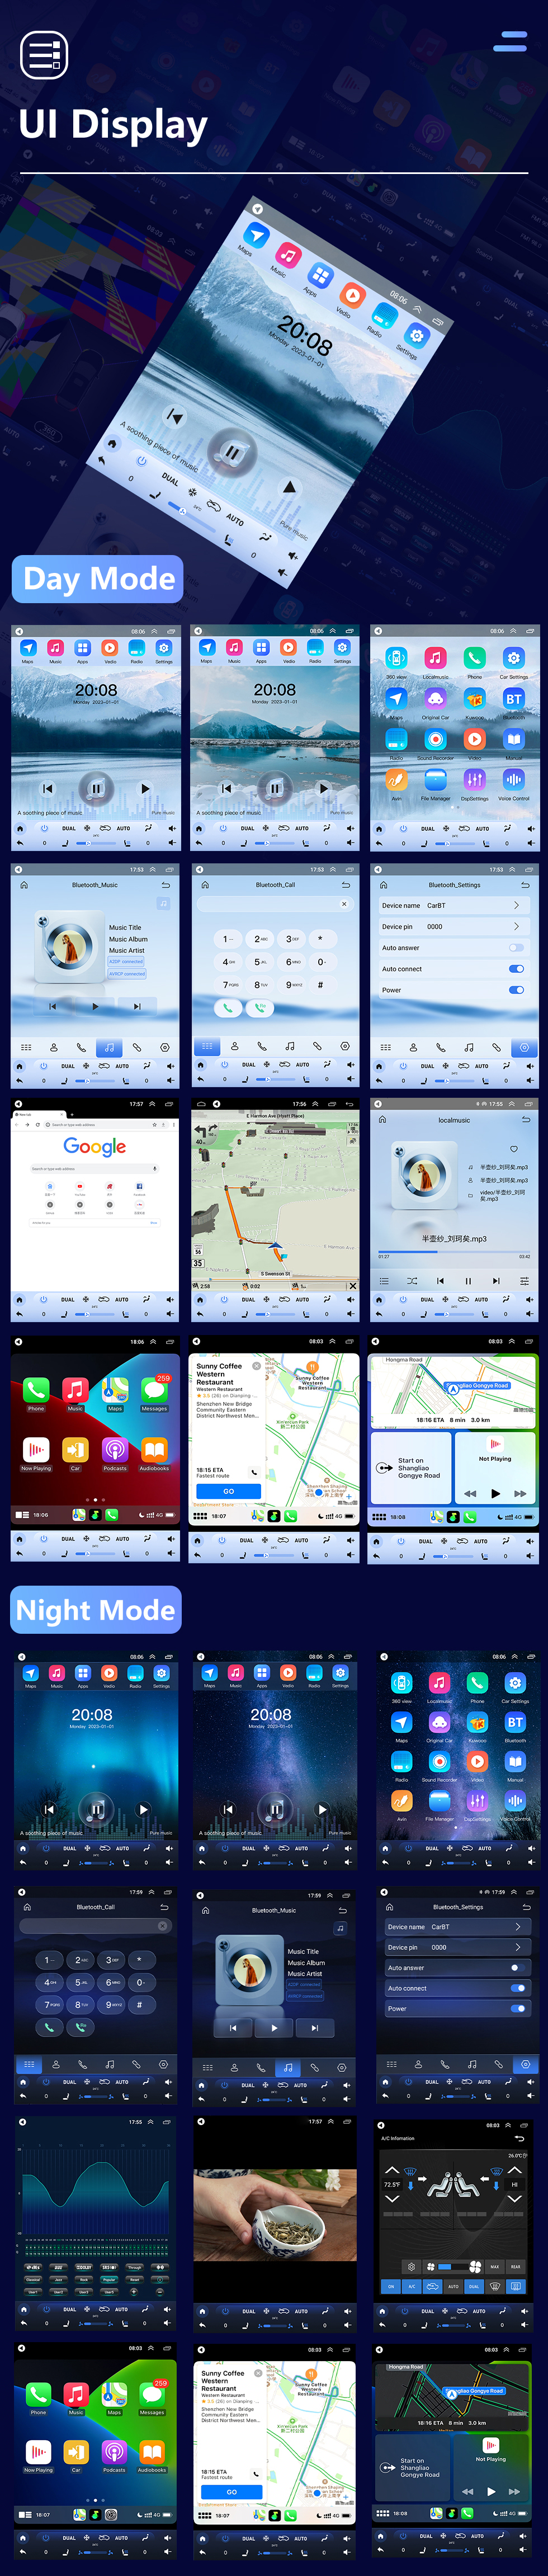 Seicane 9,7-дюймовый сенсорный HD-экран 2008 2009 2010 Hyundai Elantra Android 10.0 Радио GPS-навигация со встроенным Carplay DSP Bluetooth Поддержка музыки 4G WIFI Управление на руле